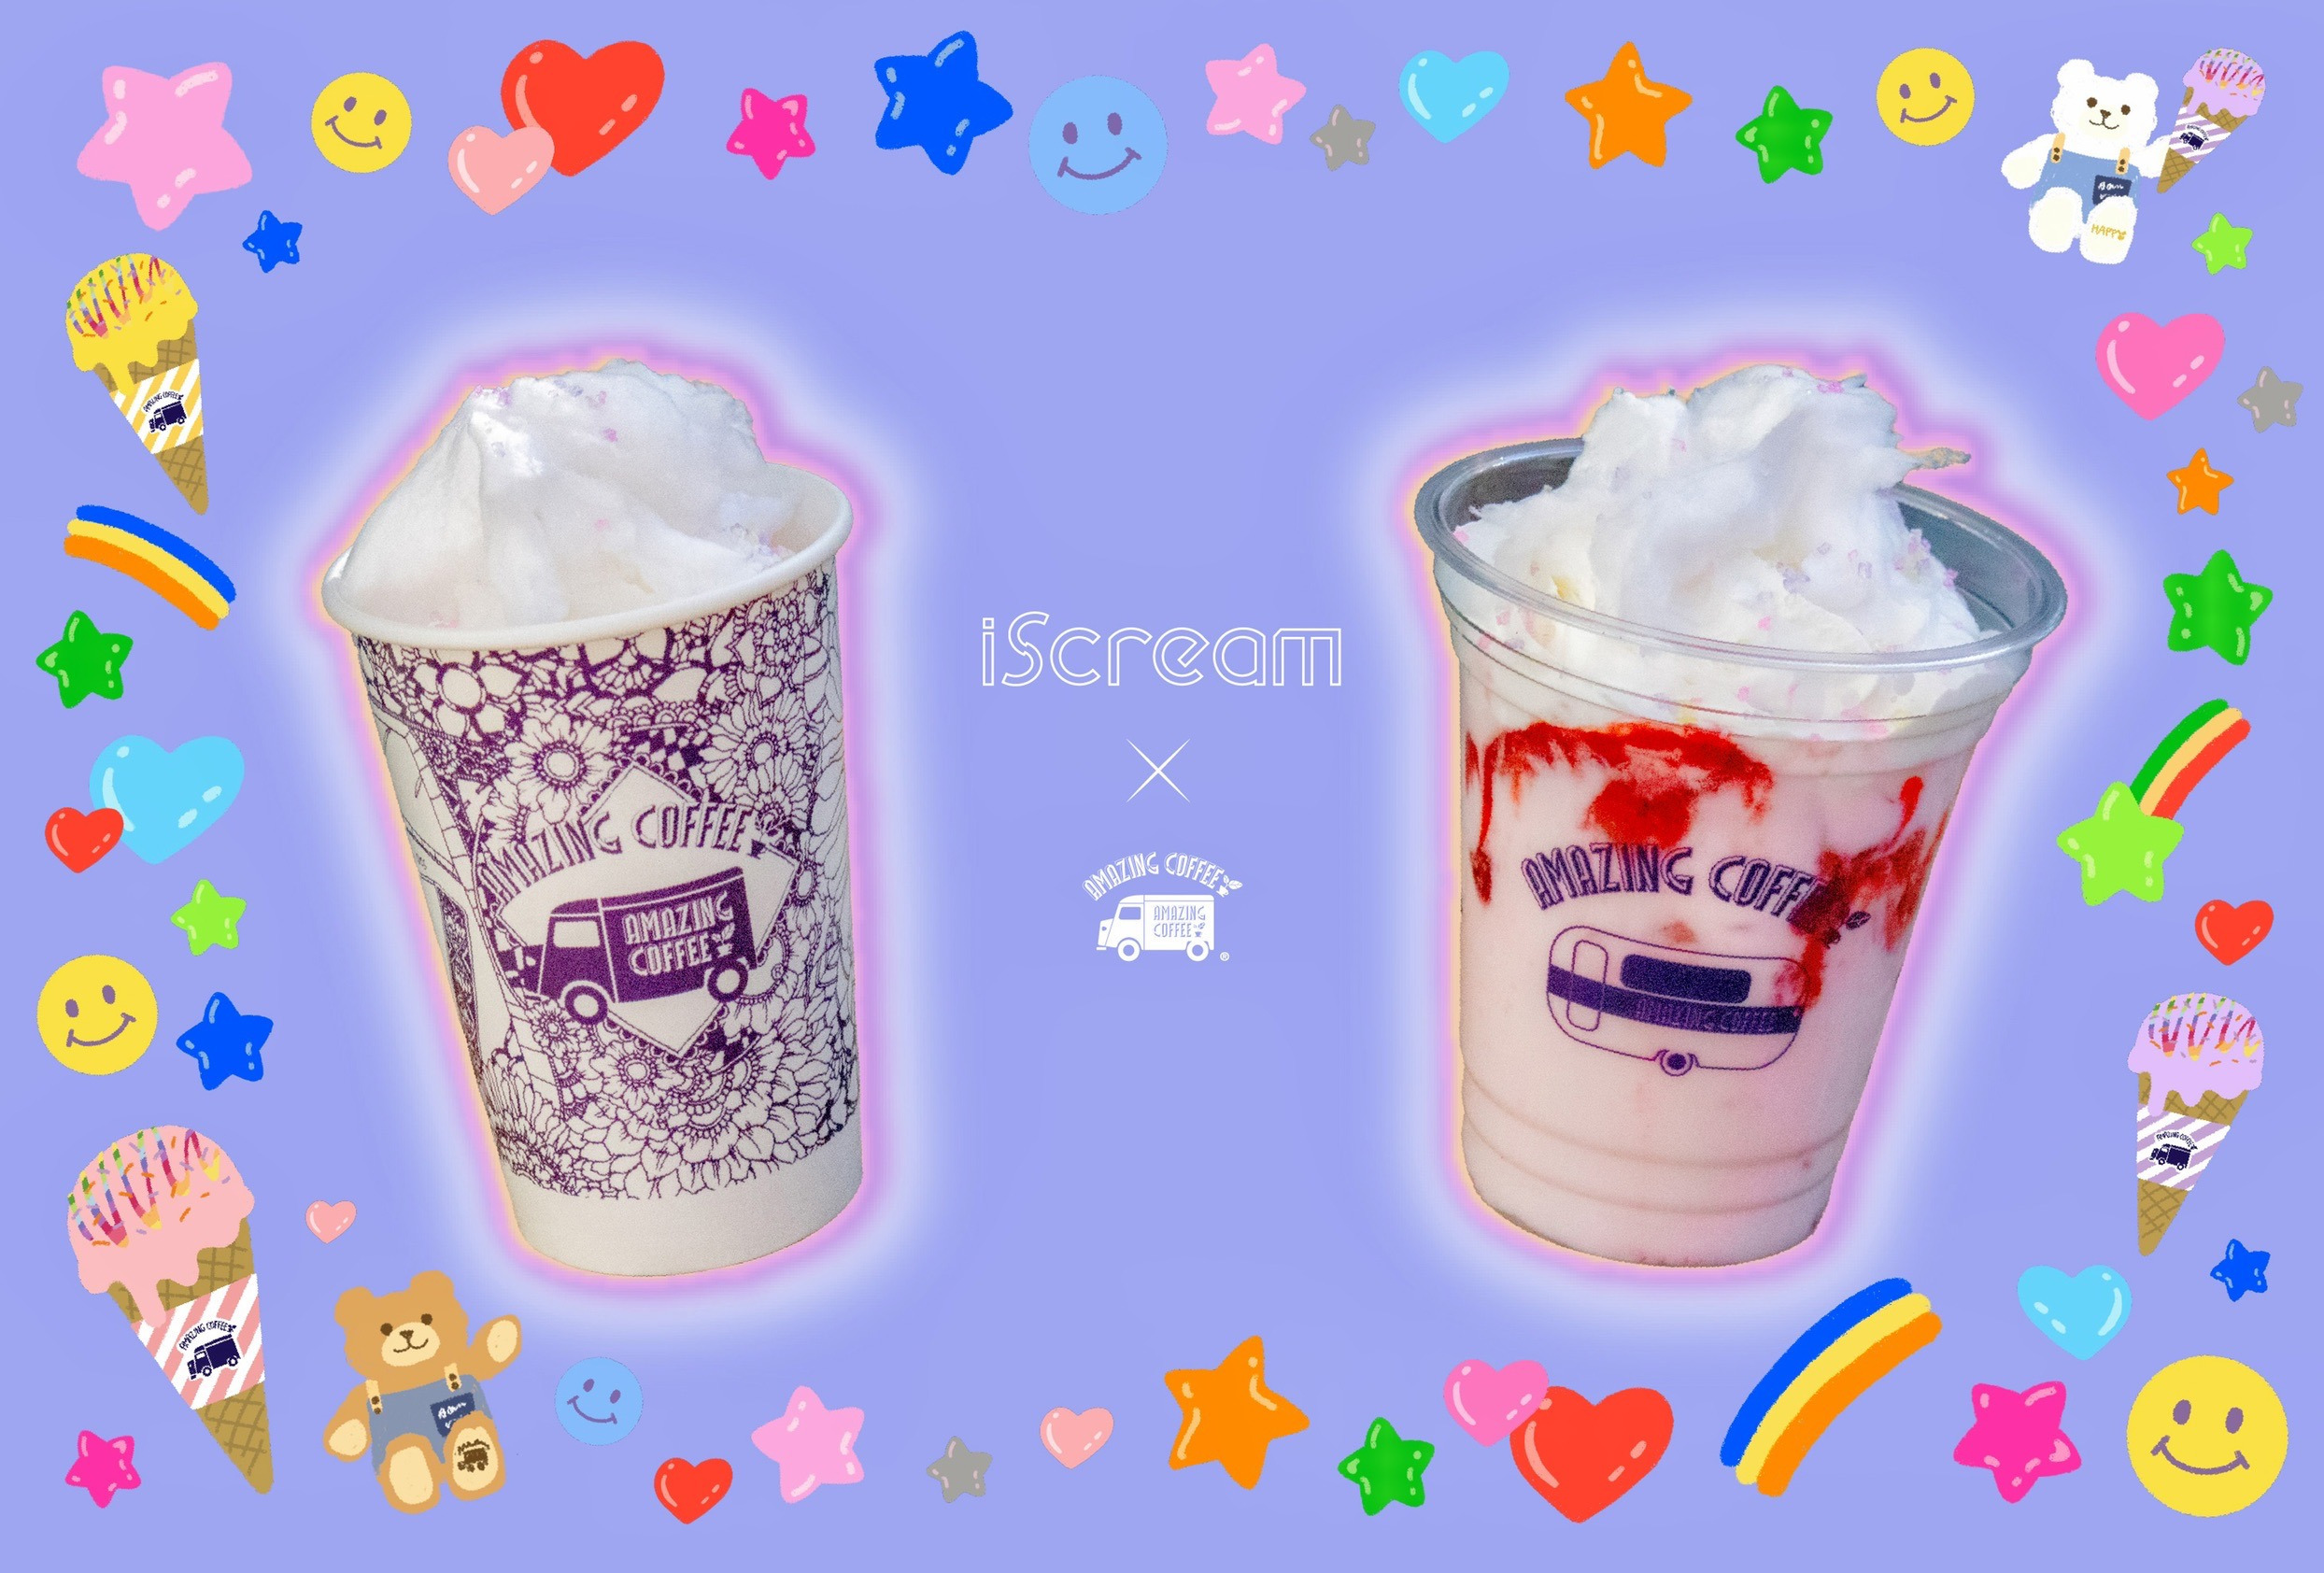 【1月13日(土)START!!】iScream×AMAZING COFFEE スペシャルコラボレーション決定★